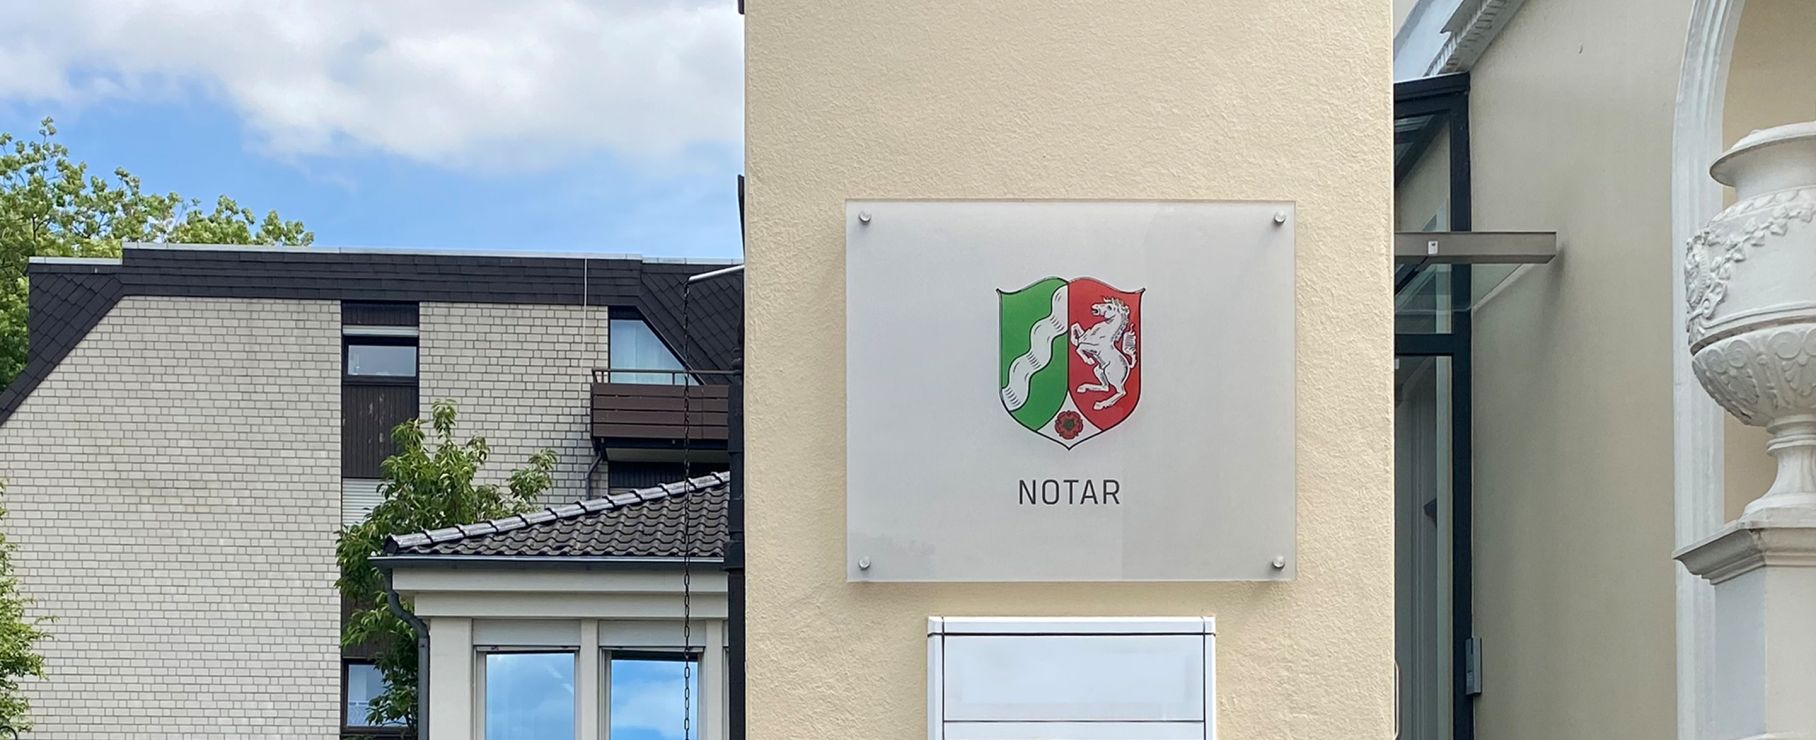 Notar-Schild an der Fassade